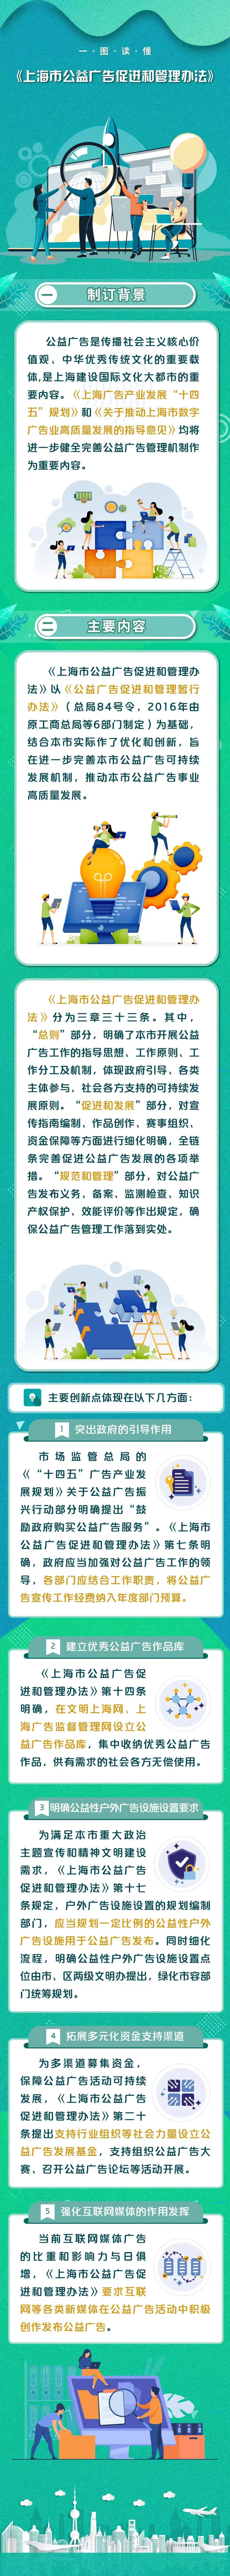 一图读懂《上海市公益广告促进和管理办法》.jpg